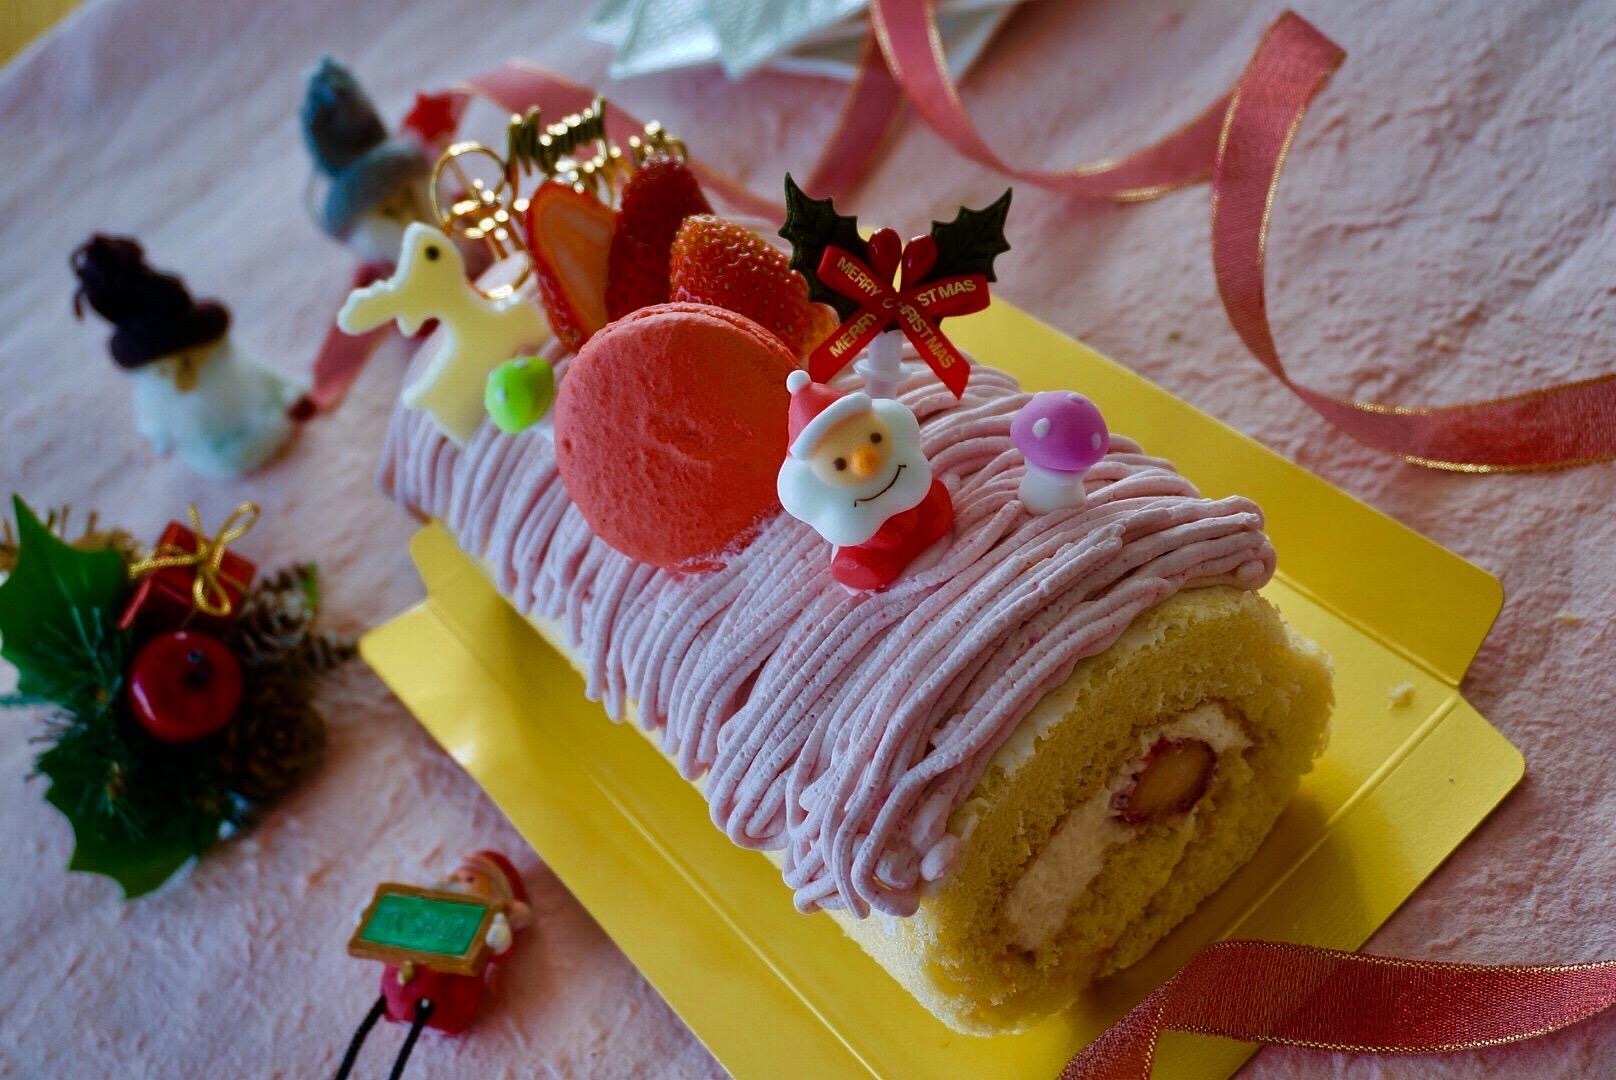 苺のクリスマスロールケーキ 開催 Mom S Sweets 静岡県静岡市 の21年3月レッスン情報 料理教室検索サイト クスパ